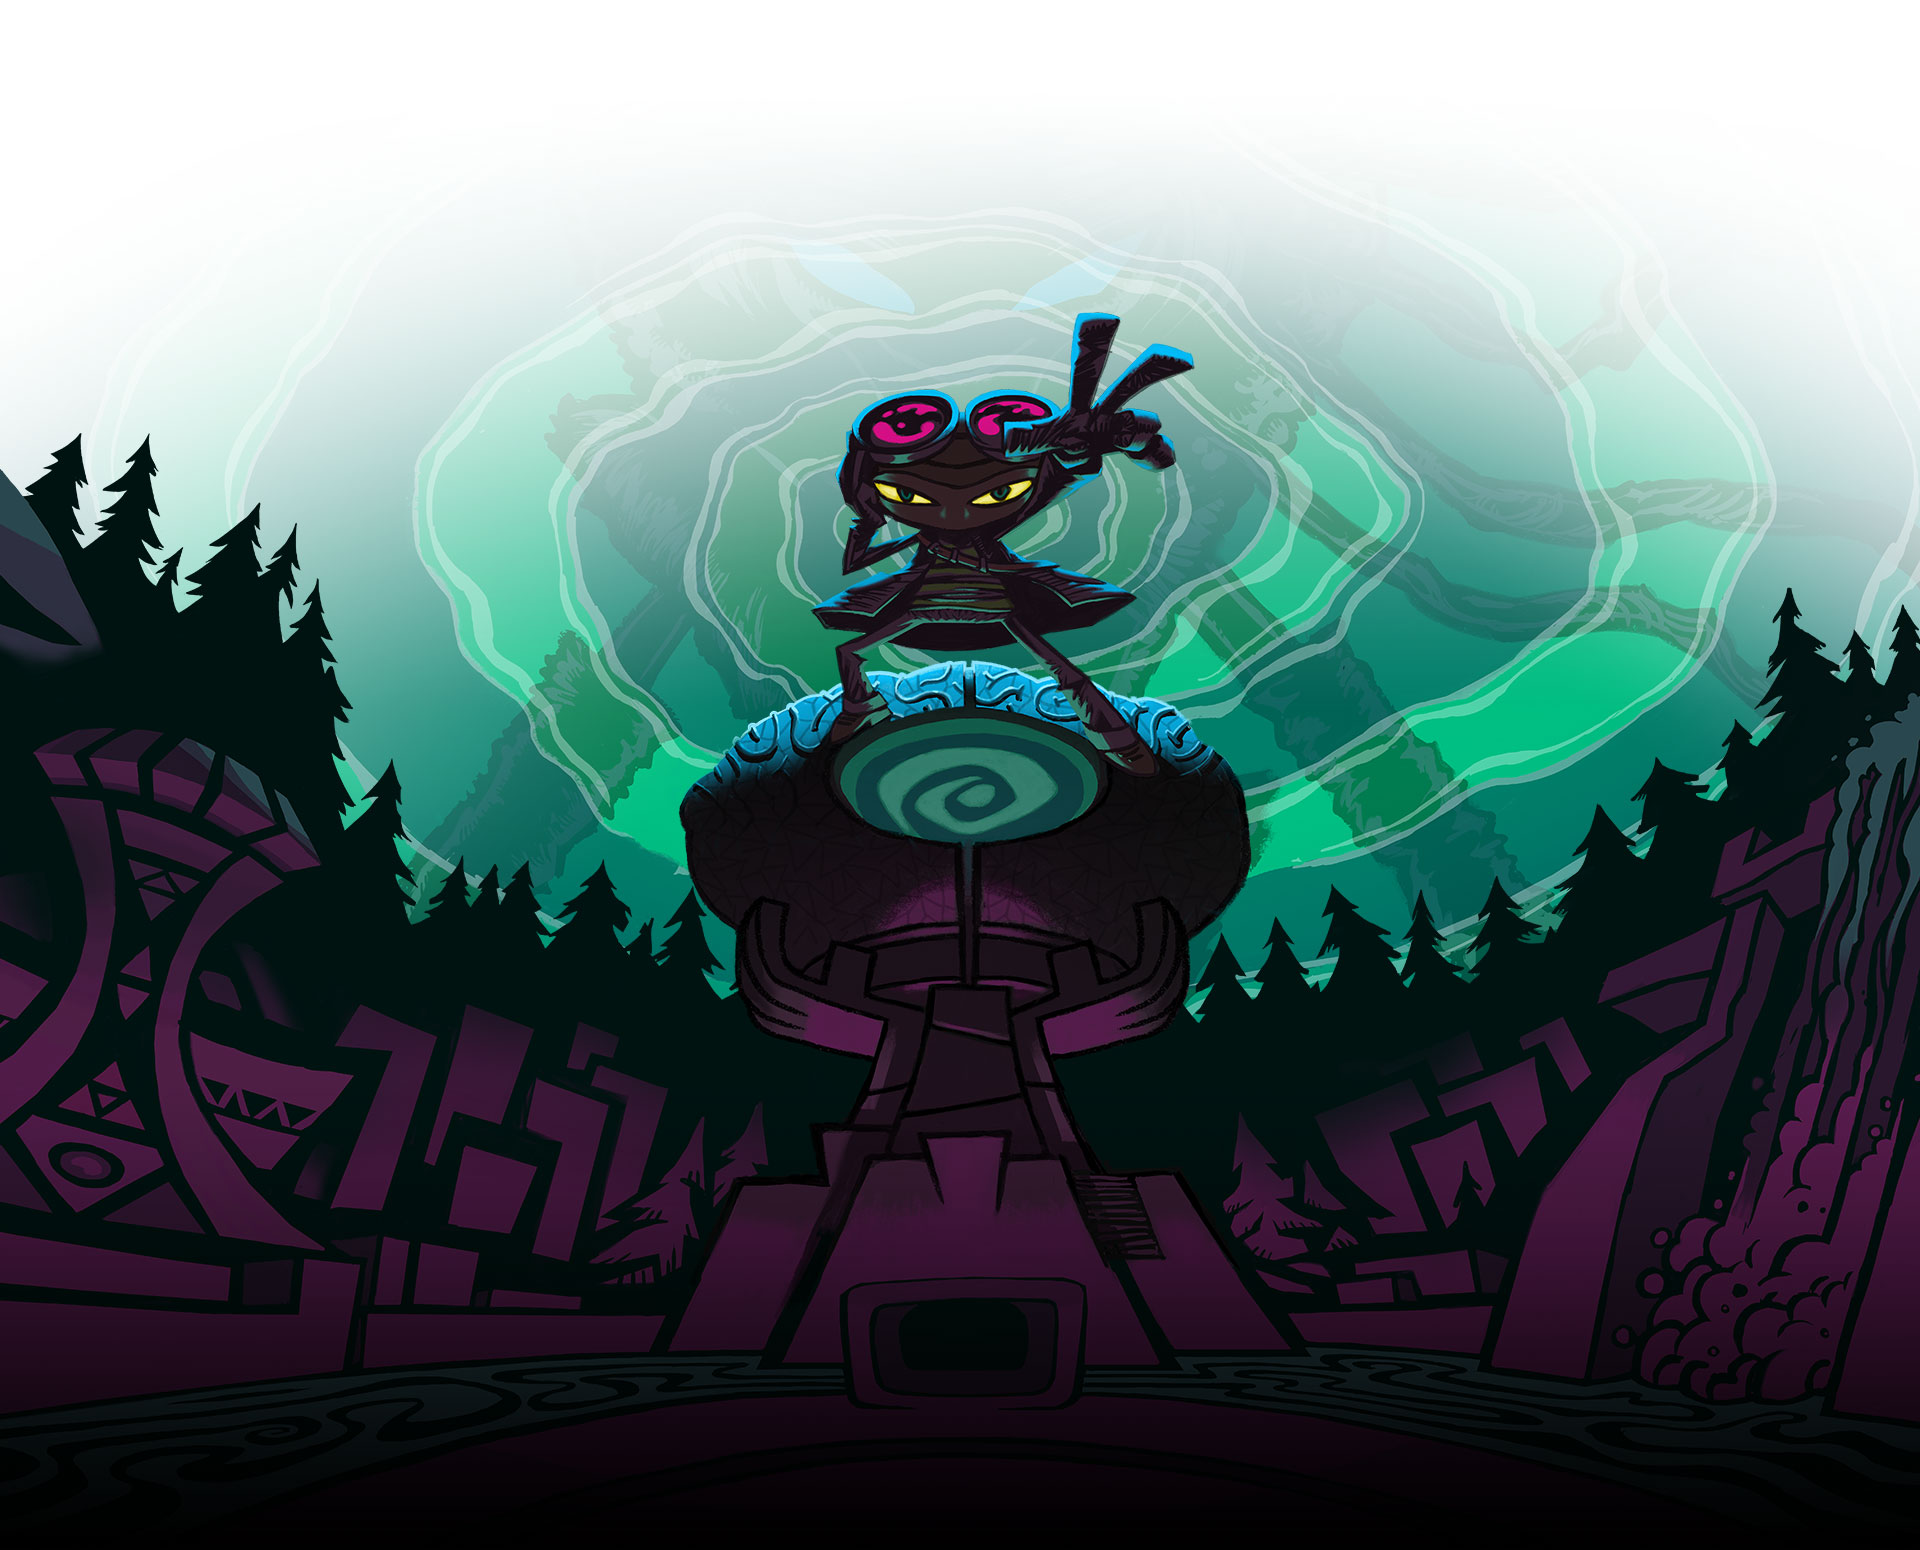 Psychonauts 2. Raz usa i poteri psichici in mezzo a una valle fluviale circondata da alberi.